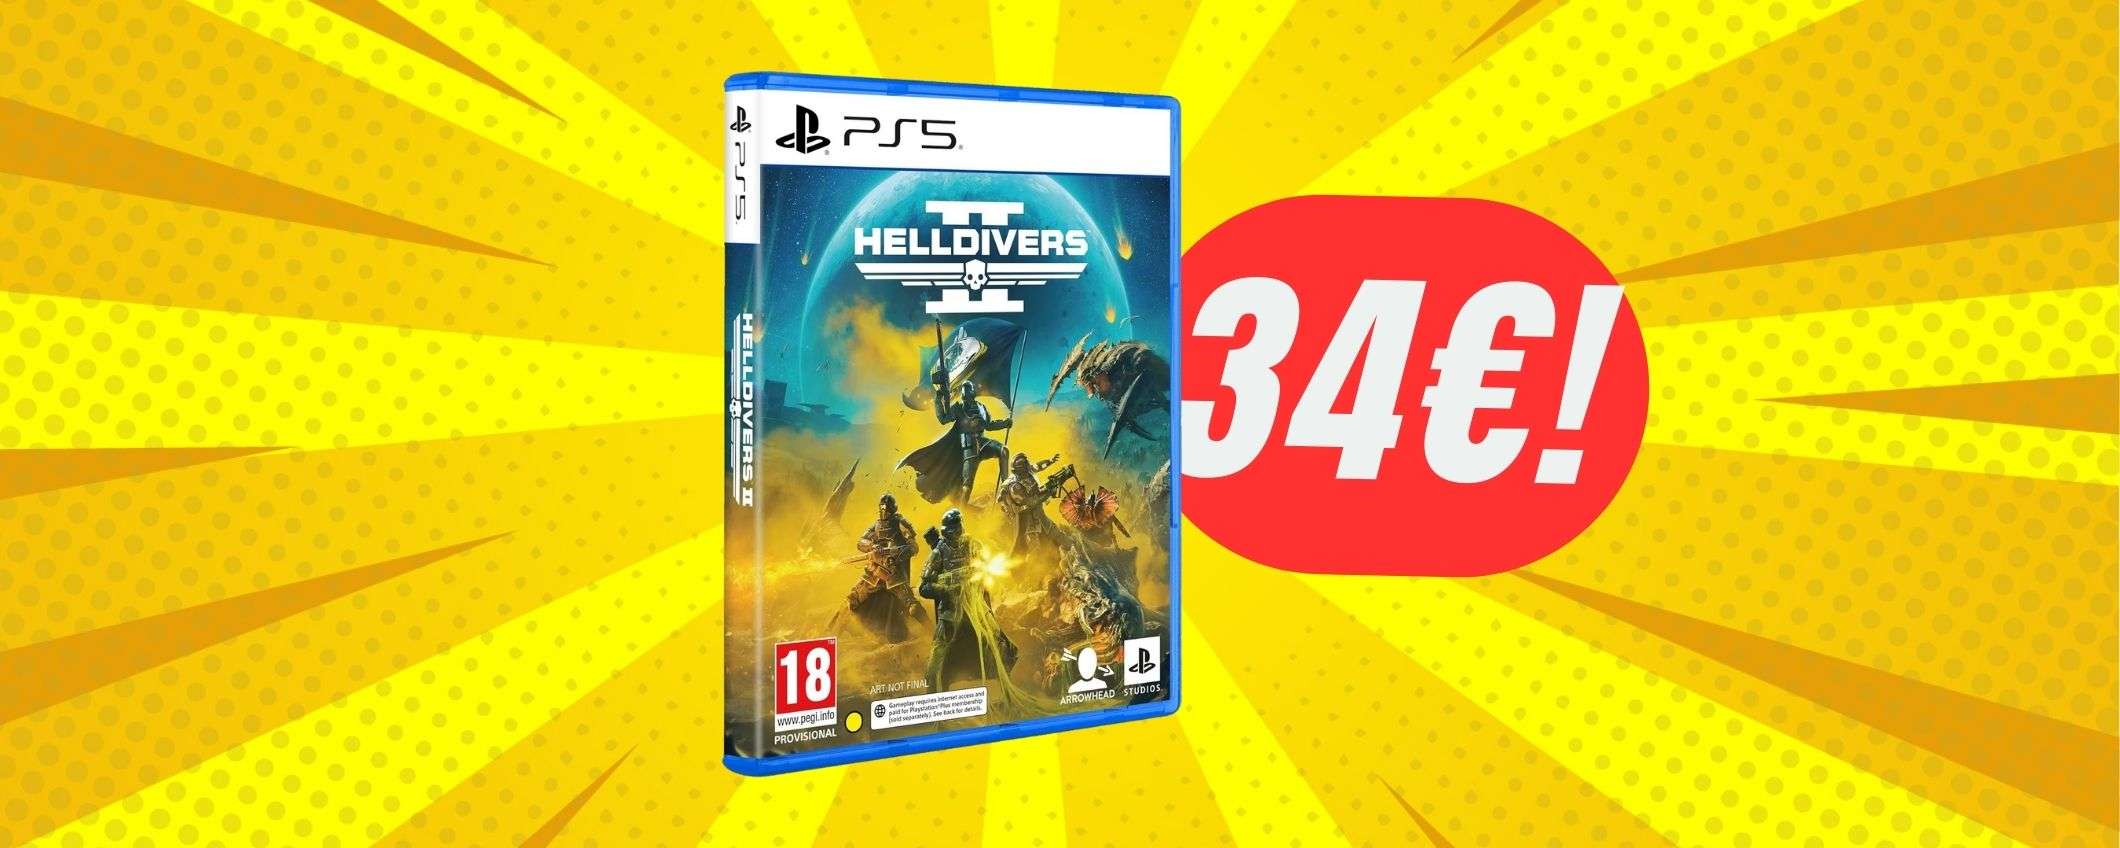 Helldivers 2 per PS5 è in SCONTO a 34€ su Amazon!